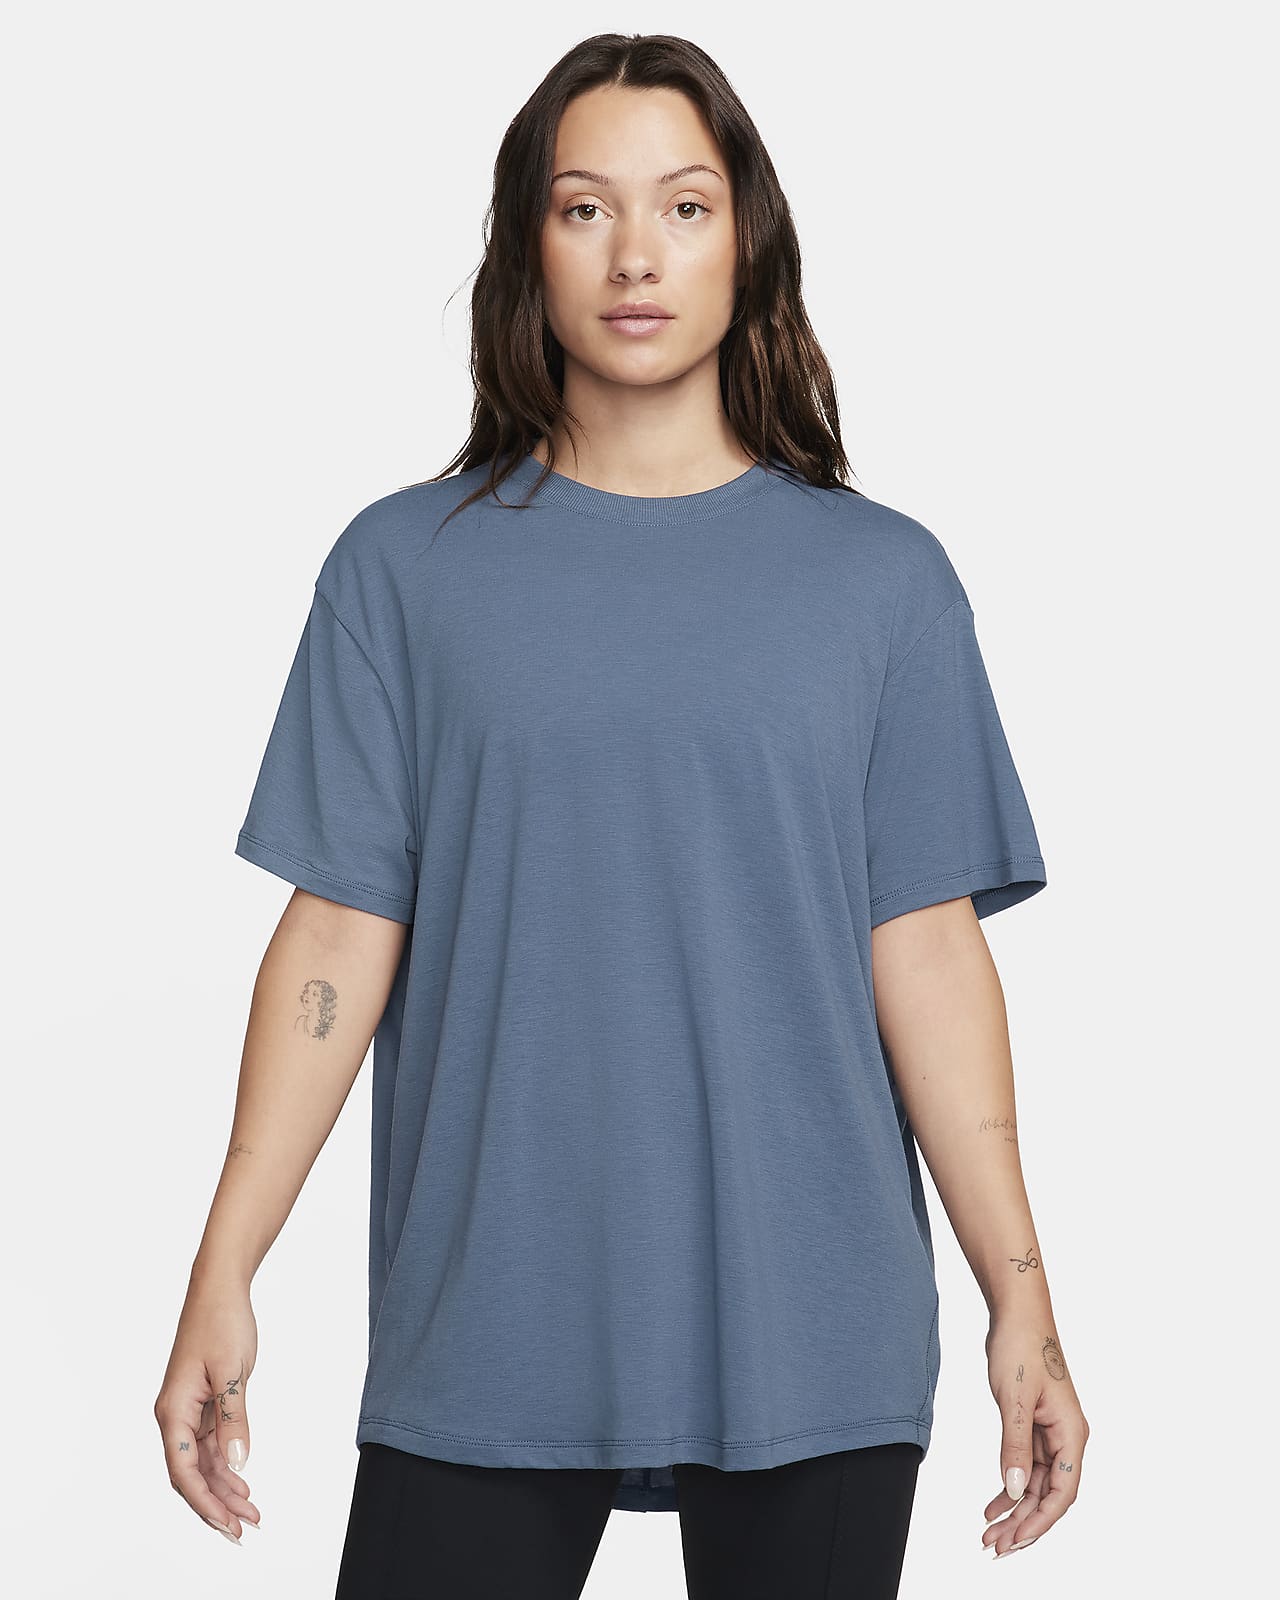 T-shirt de sport femme réfléchissant en polyester recyclé à personnaliser